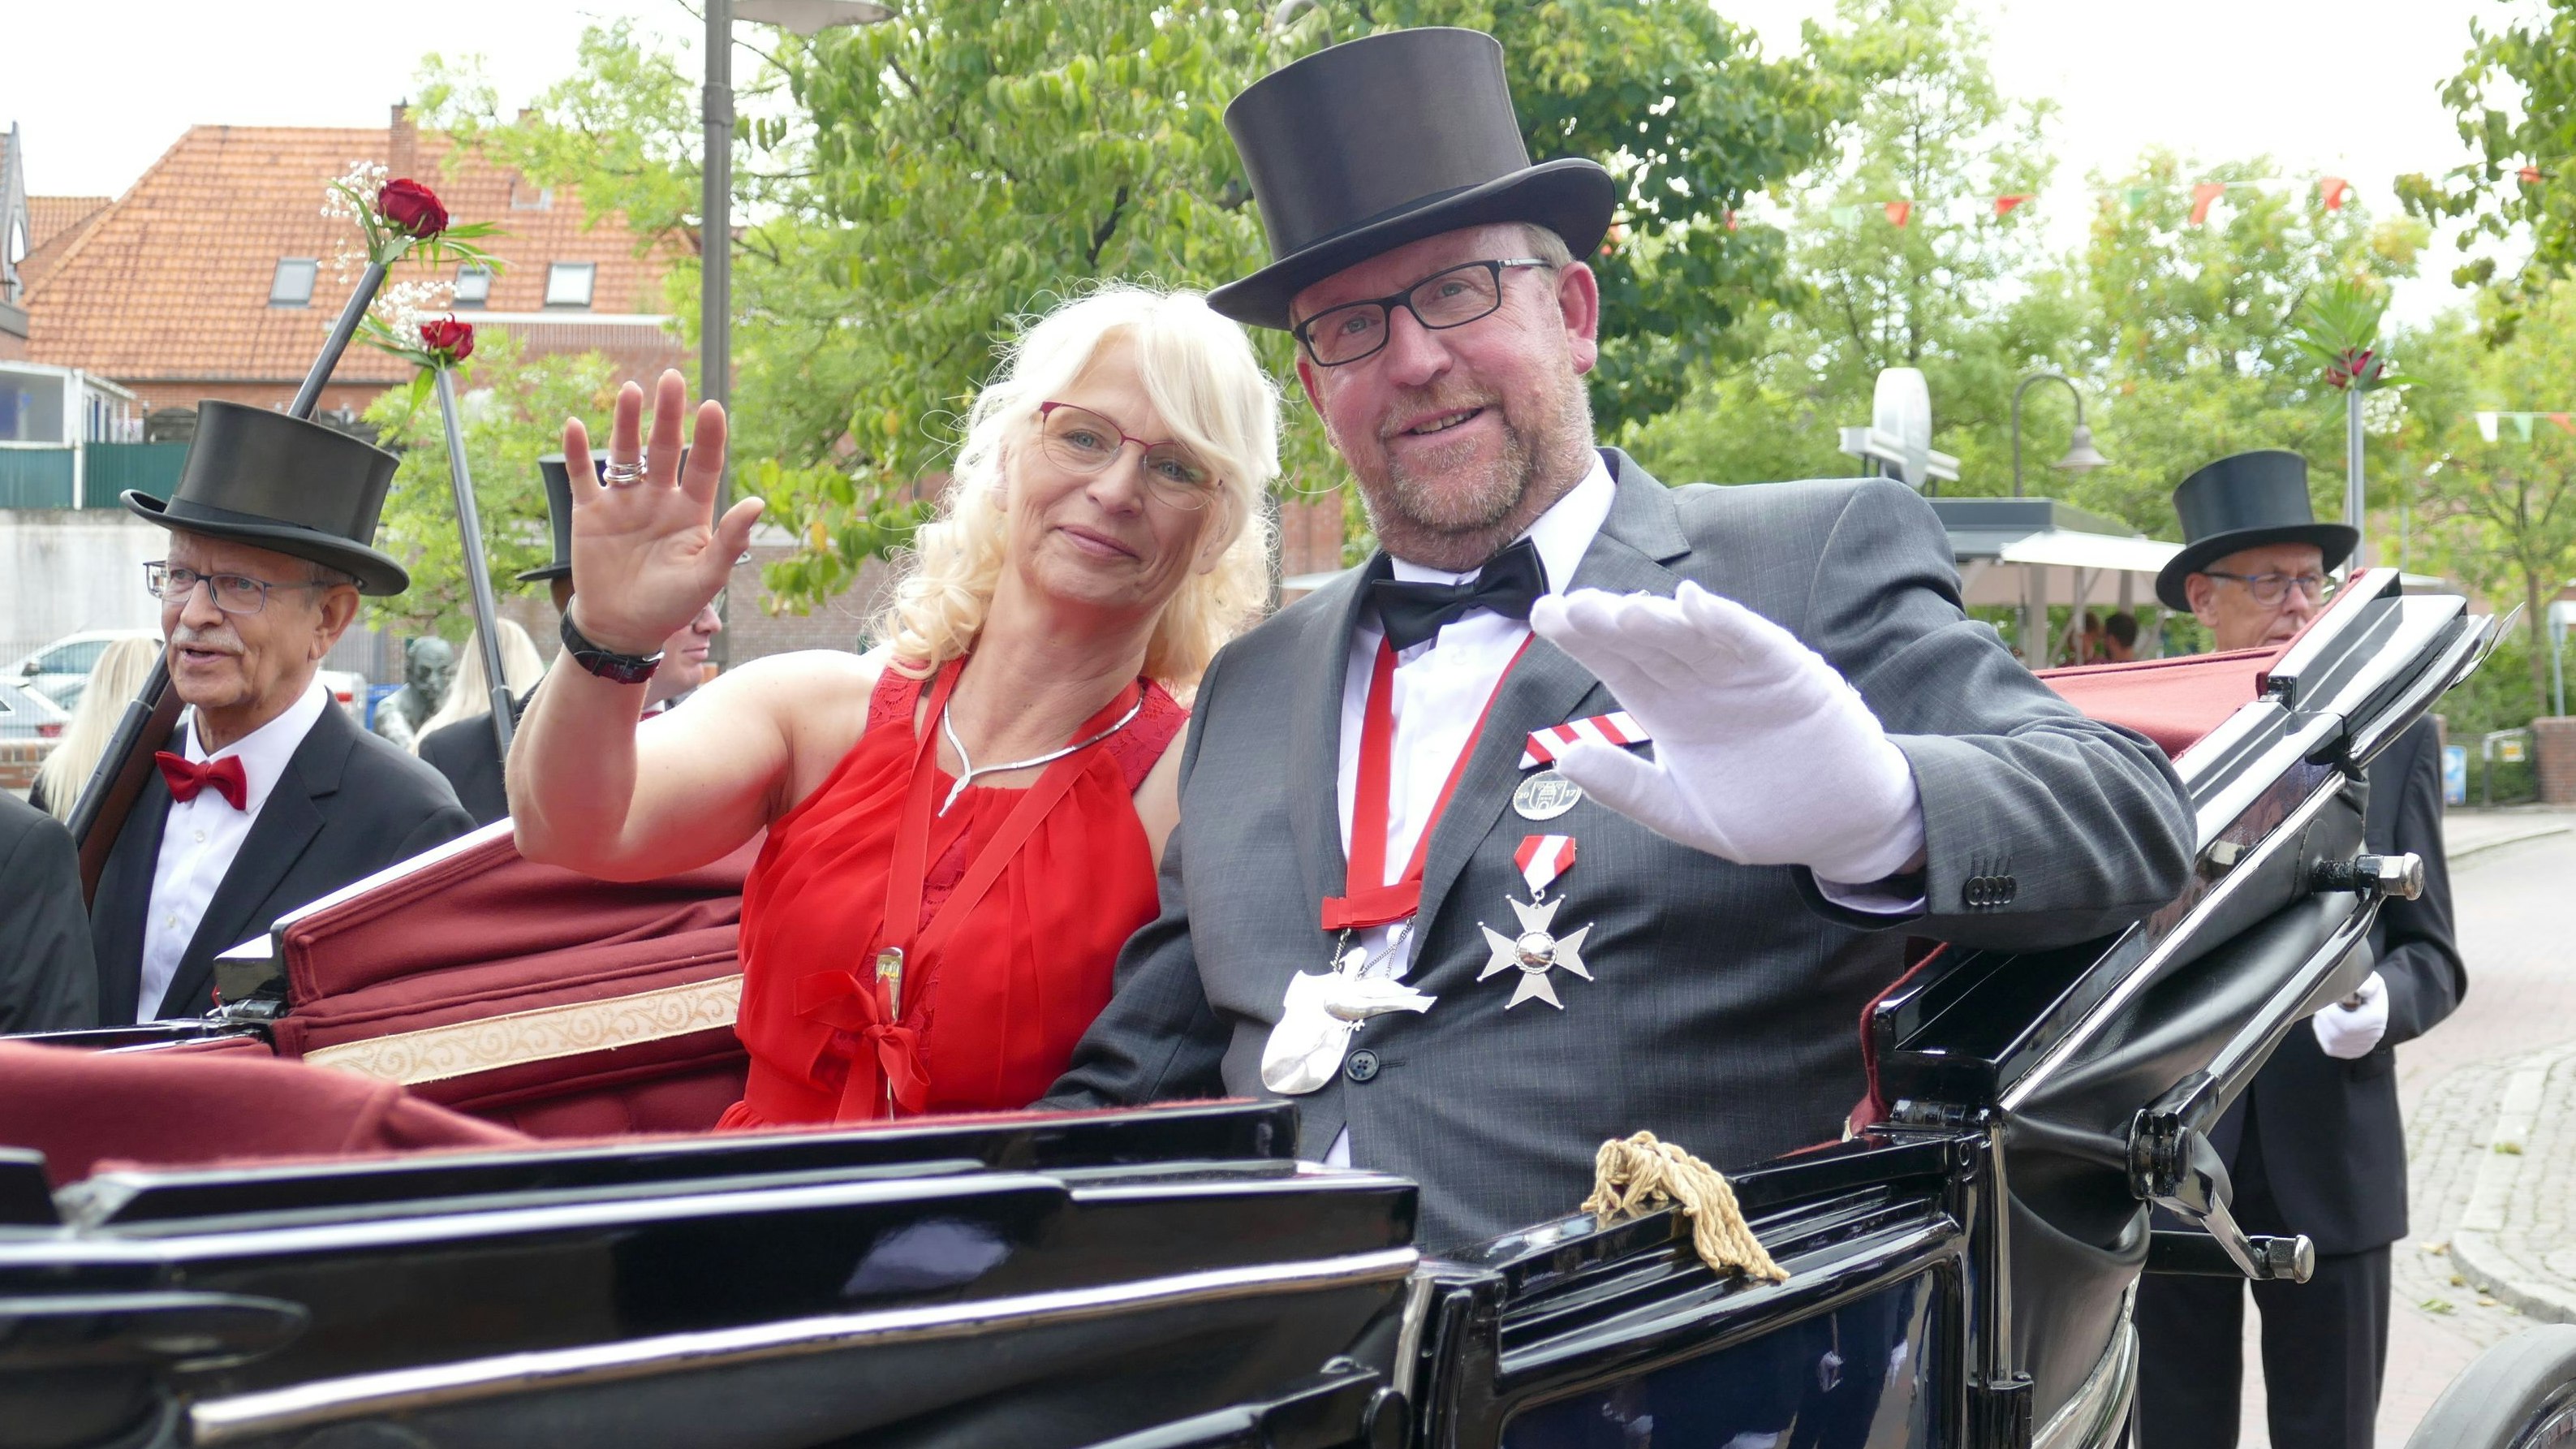 Bereit zur Ehrenfahrt: Marlies und Michael Vahle in der Kutsche, mit der sie, begleitet von ihrer Ehrengarde, durch die Innenstadt und zum Festplatz fahren. Foto: Stix